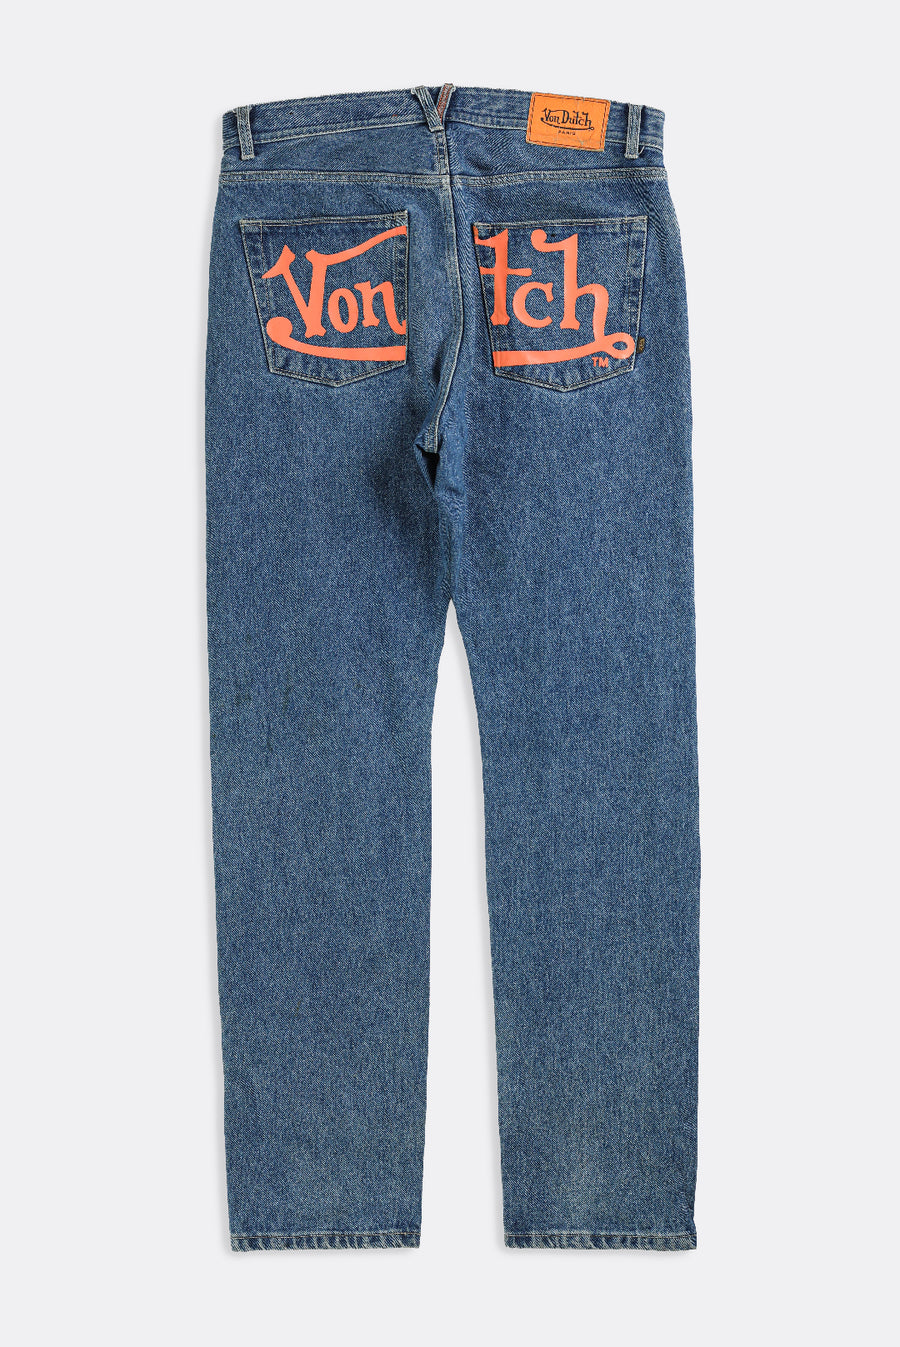 Vintage Von Dutch Denim Pants - W36